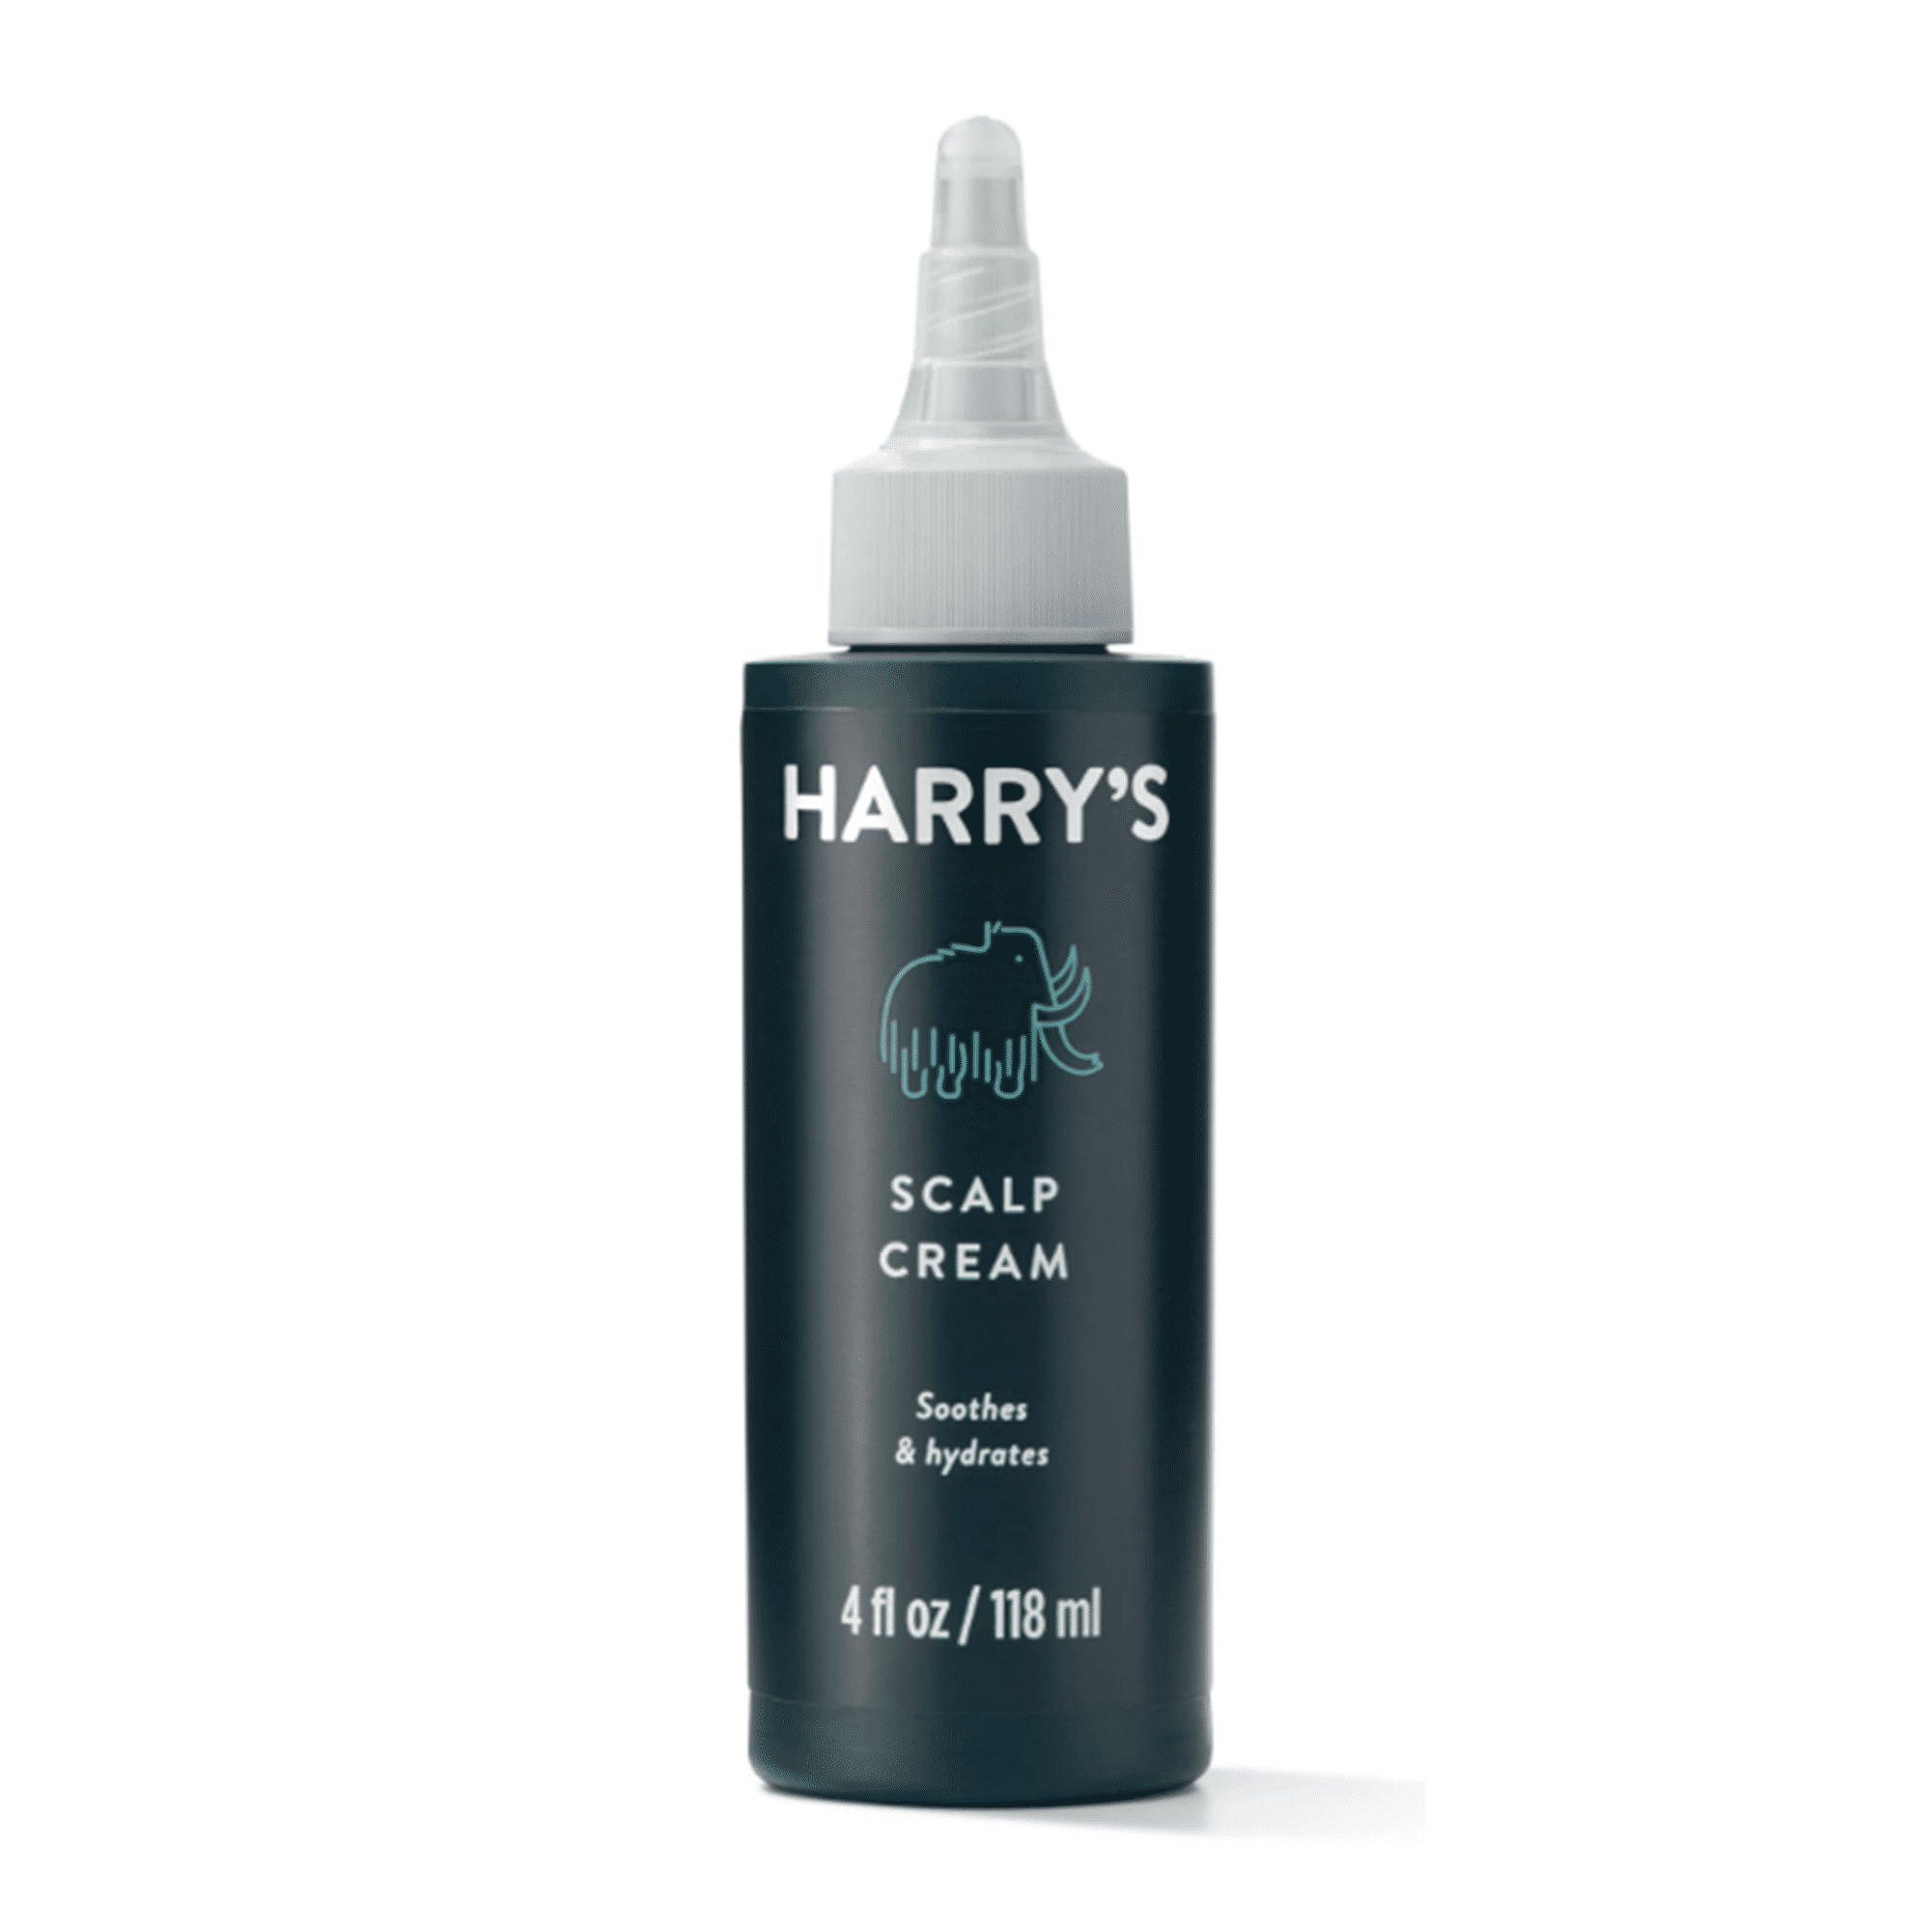 Bottles Harrys Harry's Scalp Cream 4 FL Oz Each for sale online